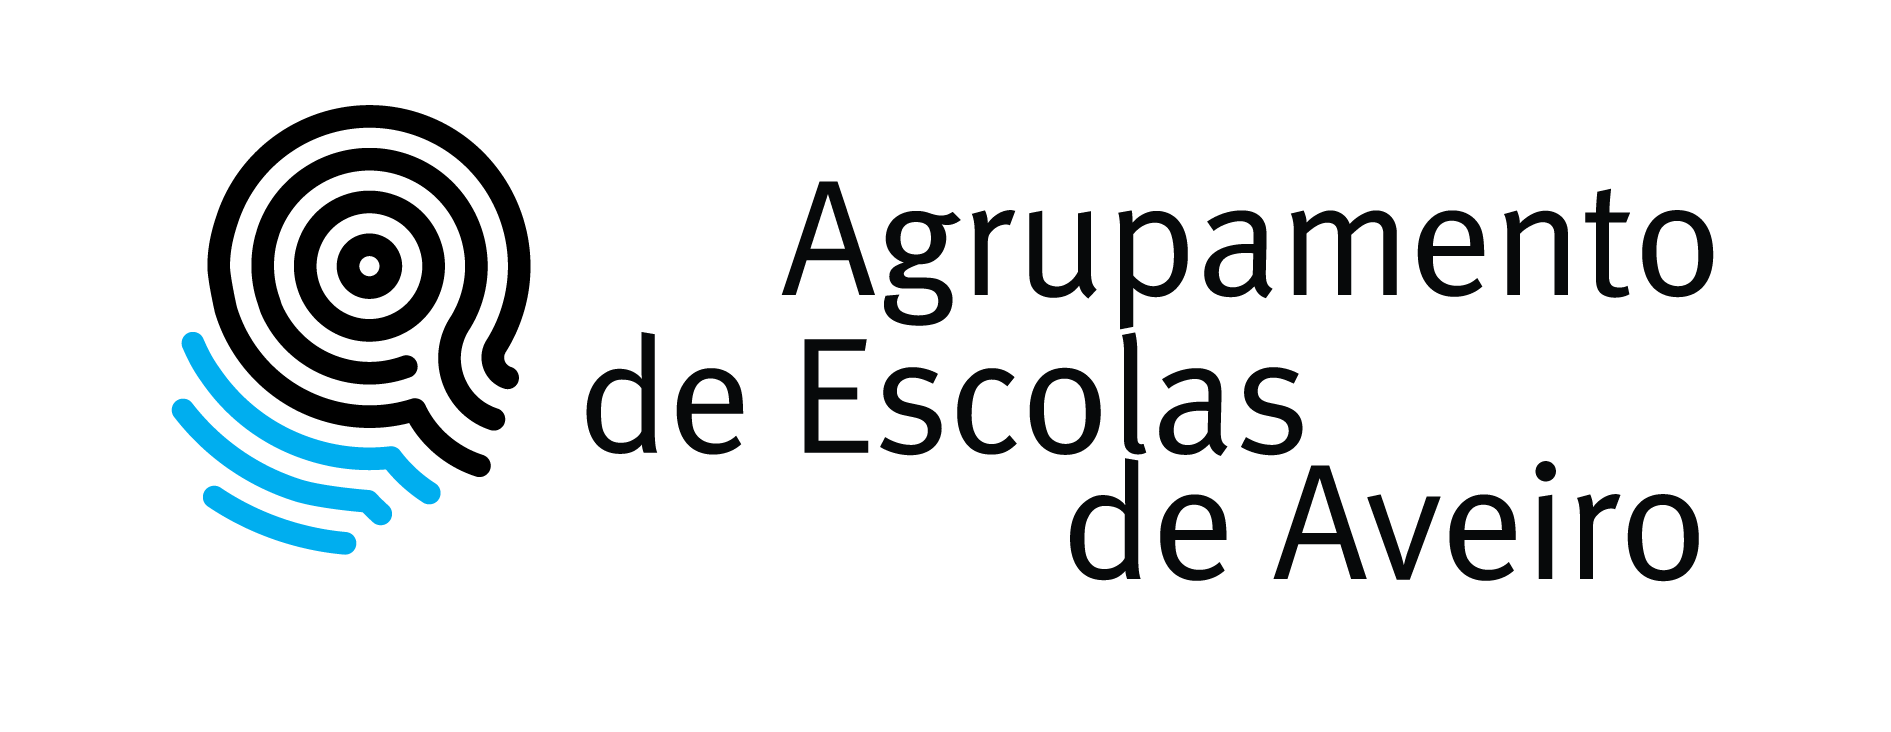 Logotipos do Agrupamento de Escolas de Aveiro – pdf (editável para as gráficas)